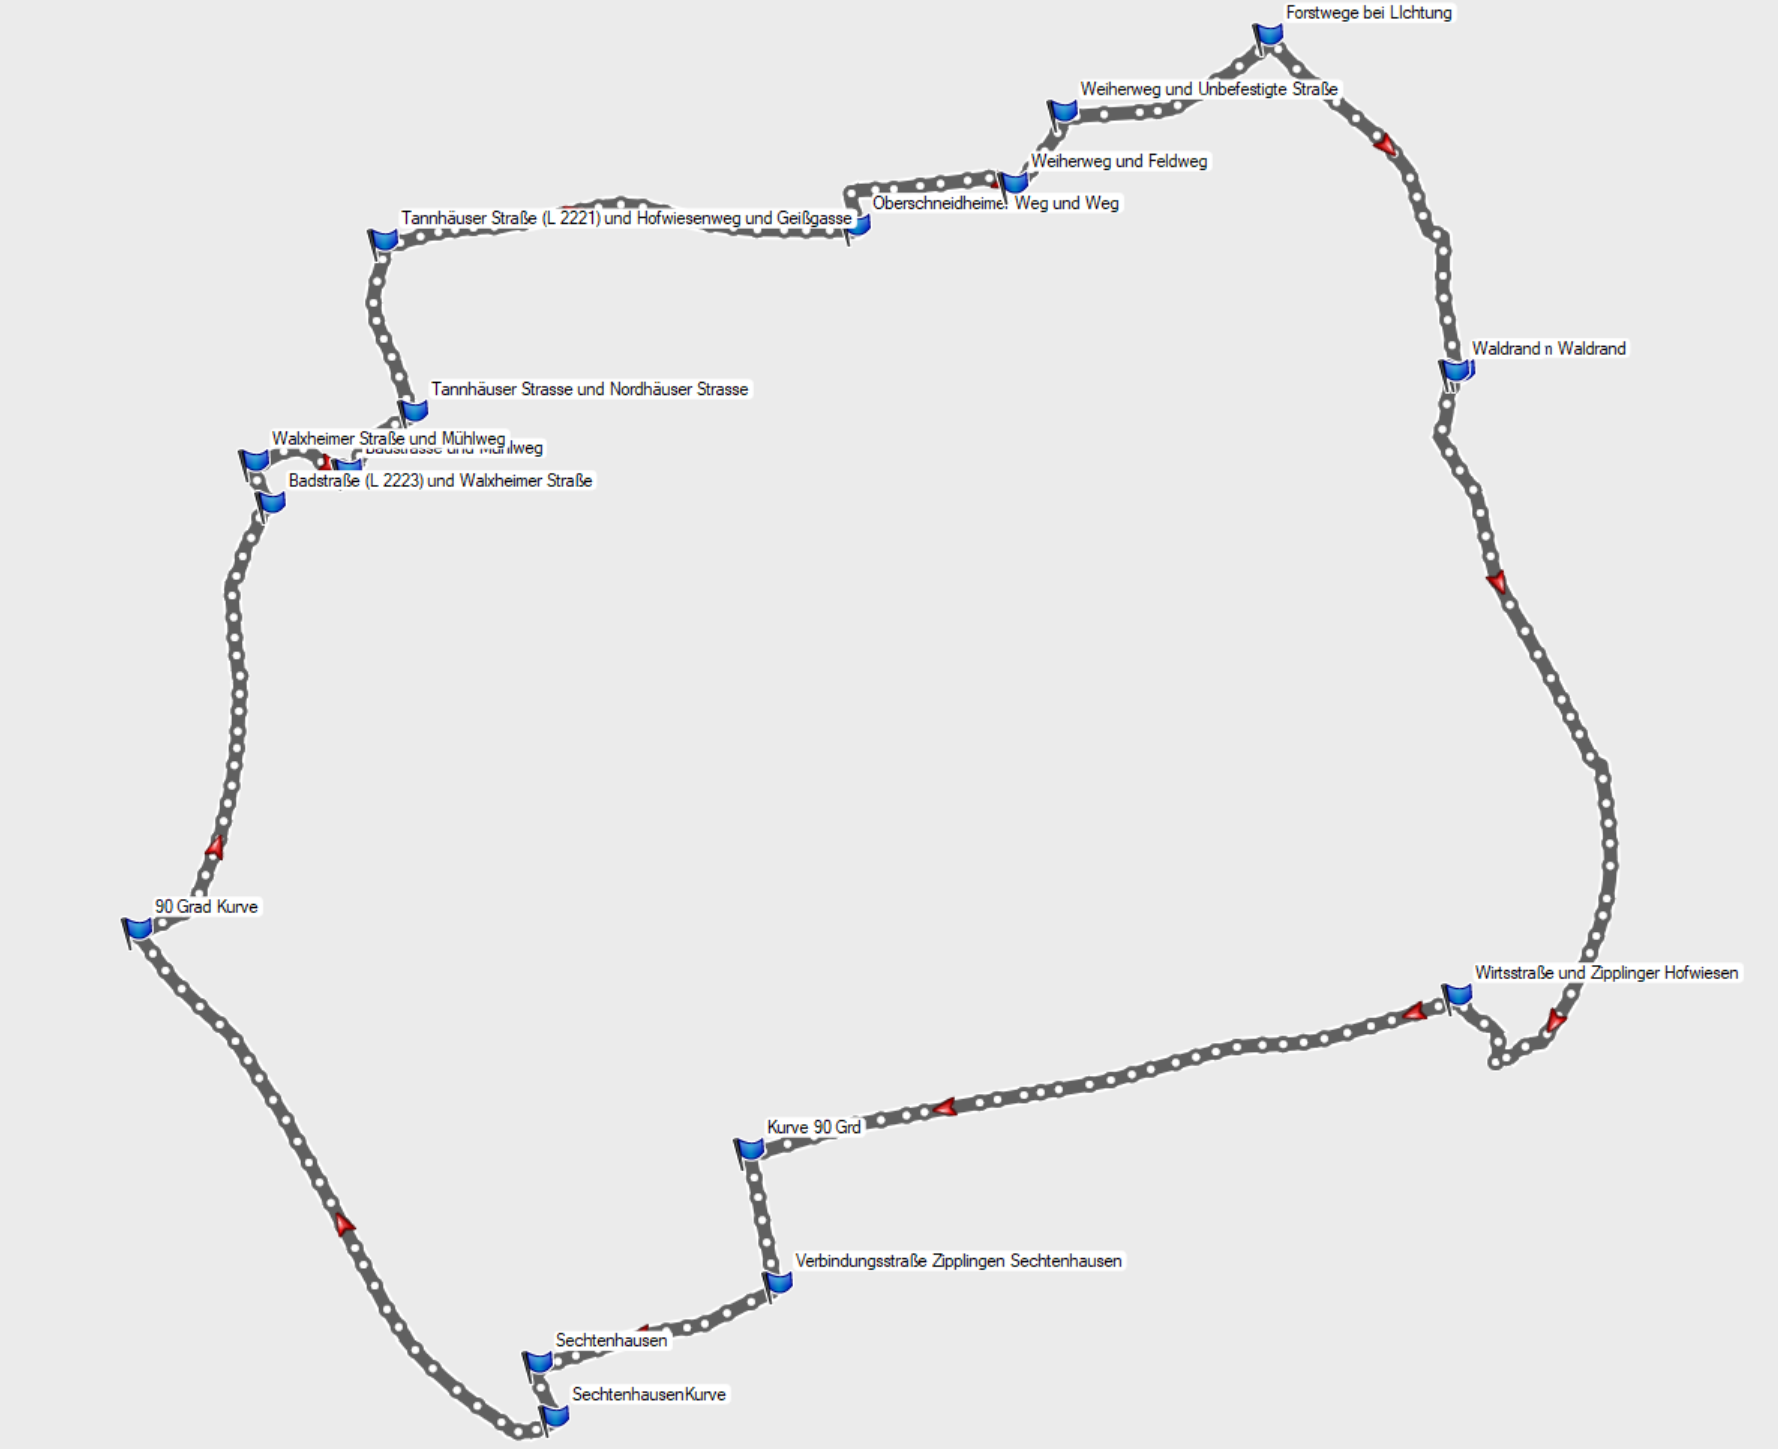 Route Zipplingen - Sechtaweg 1